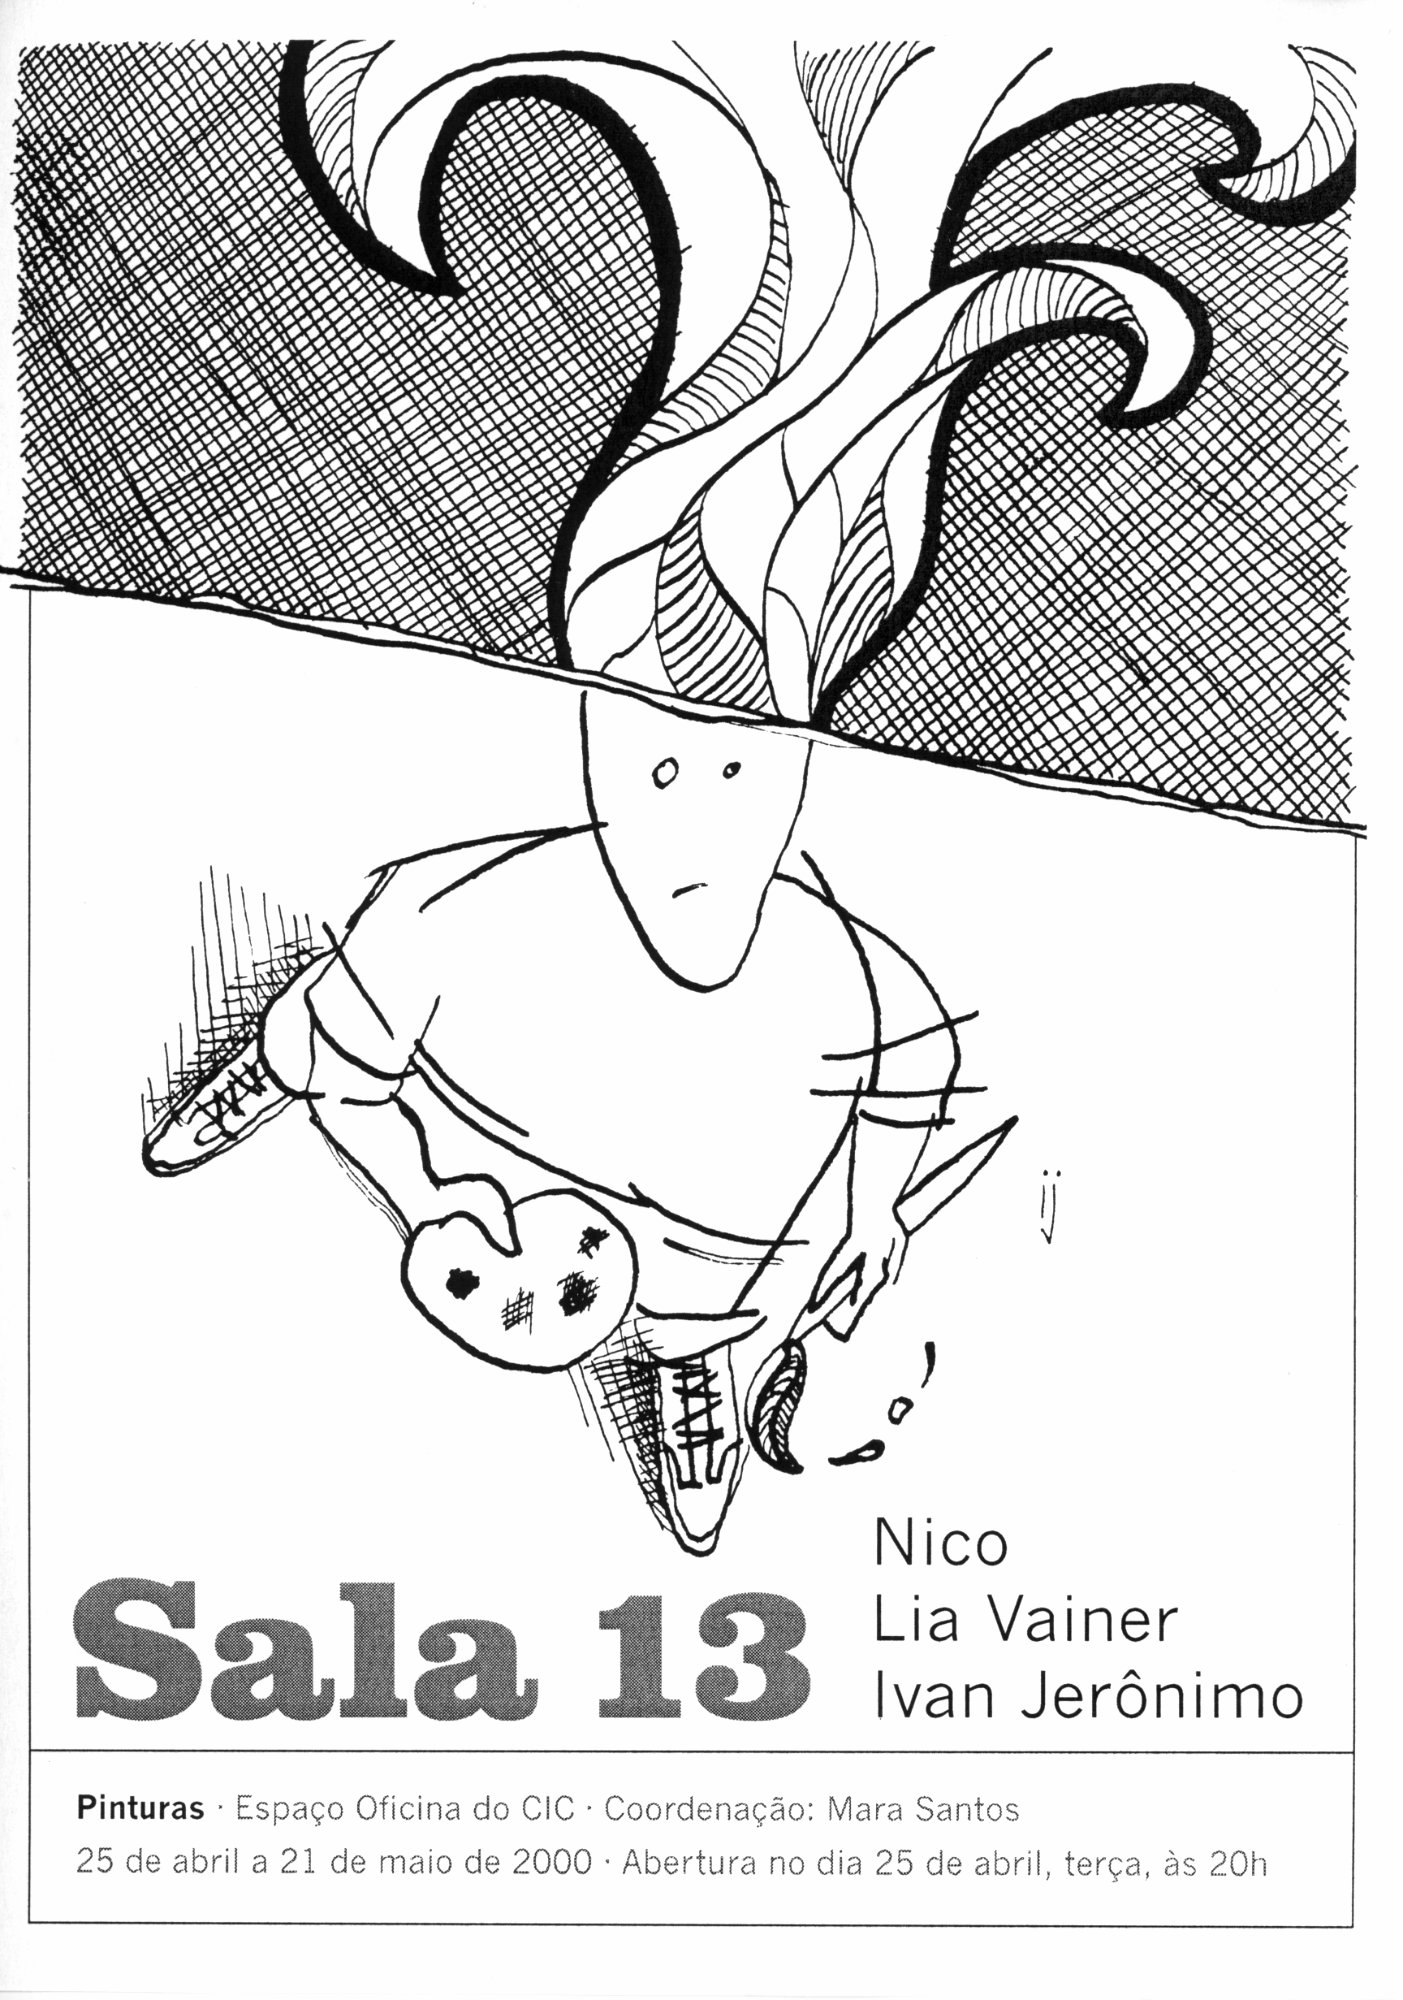 Convite exposição Sala 13 com Nico
Lia Vainer
Ivan Jerônimo
no Espaço Oficina do CIC • Coordenação: Mara Santos
abril a maio de 2000